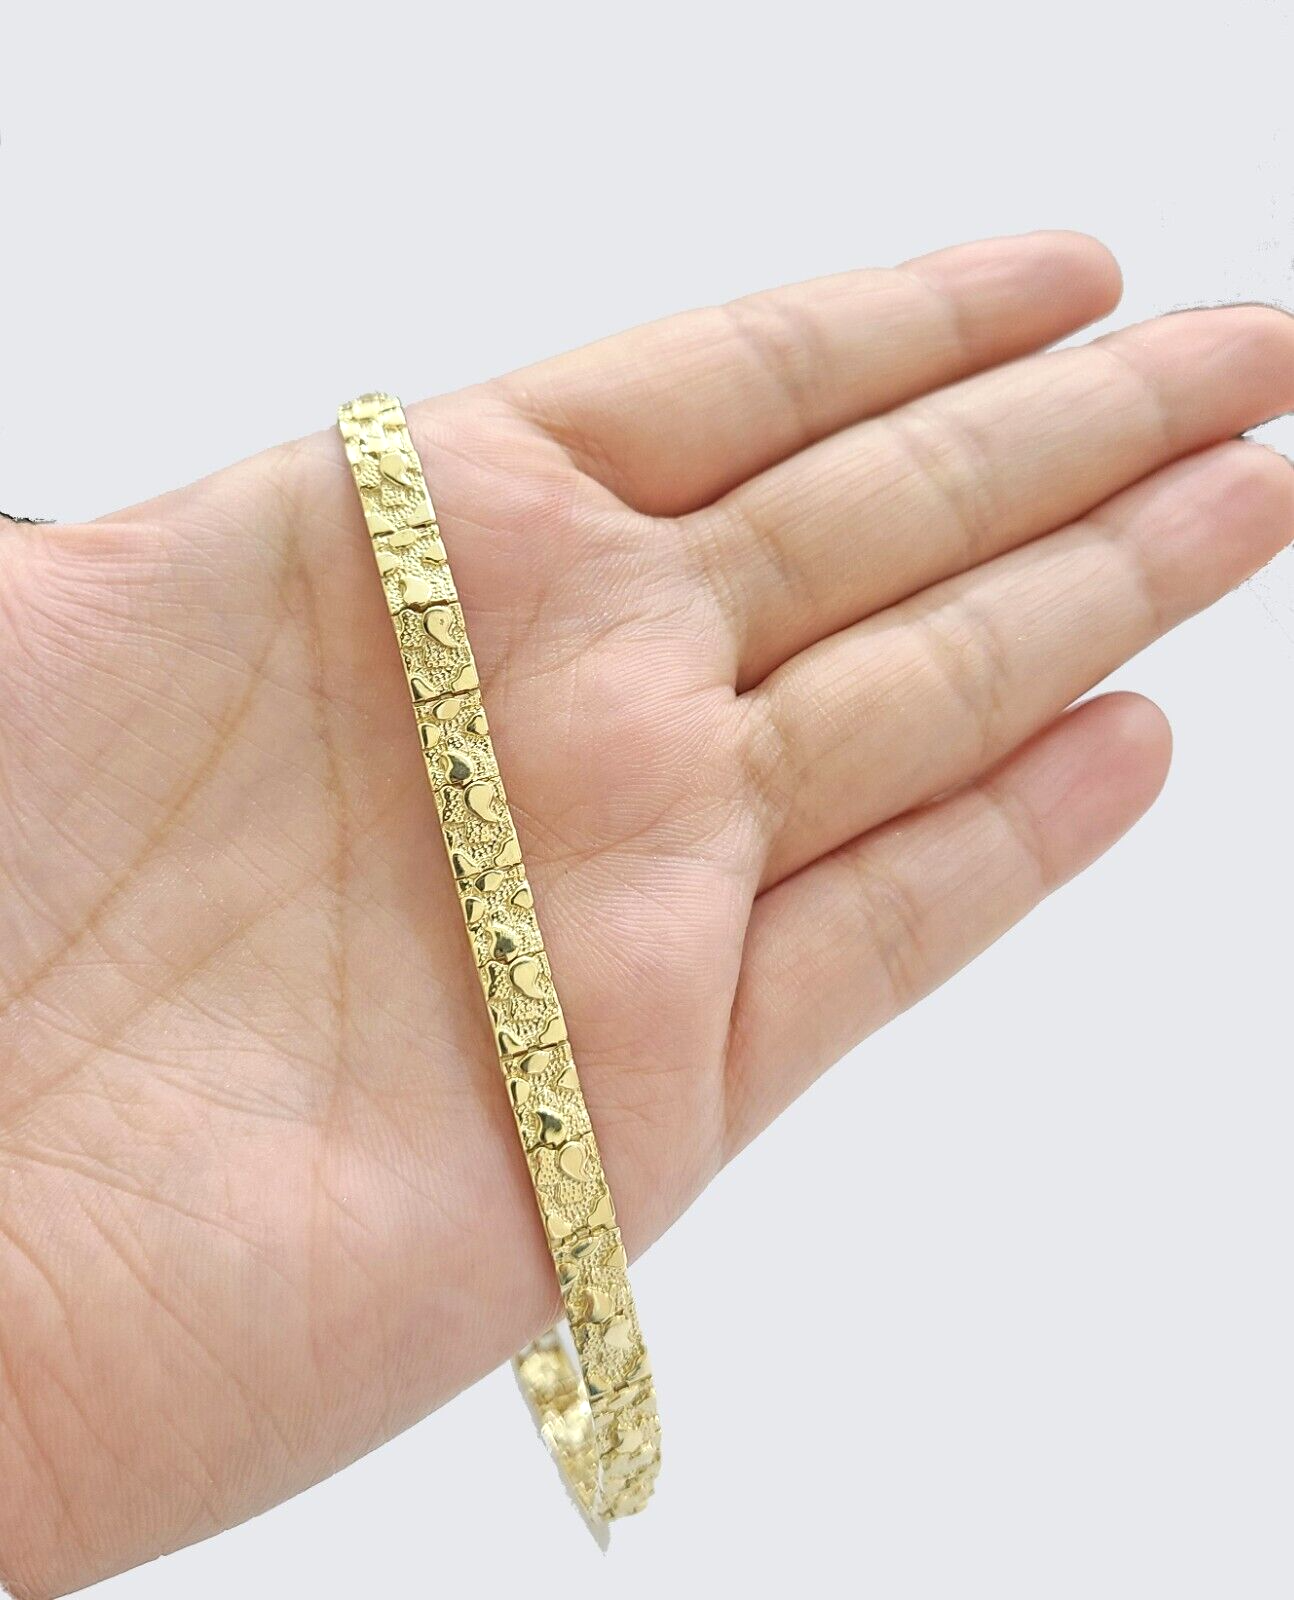 VTG 10k Yellow Gold Nugget Bracelet, Gold Brutalist Abstract Link Bracelet,  Retro Modernist Solid Gold Bracelet, Free Form Tennis Bracelet - Etsy Israel